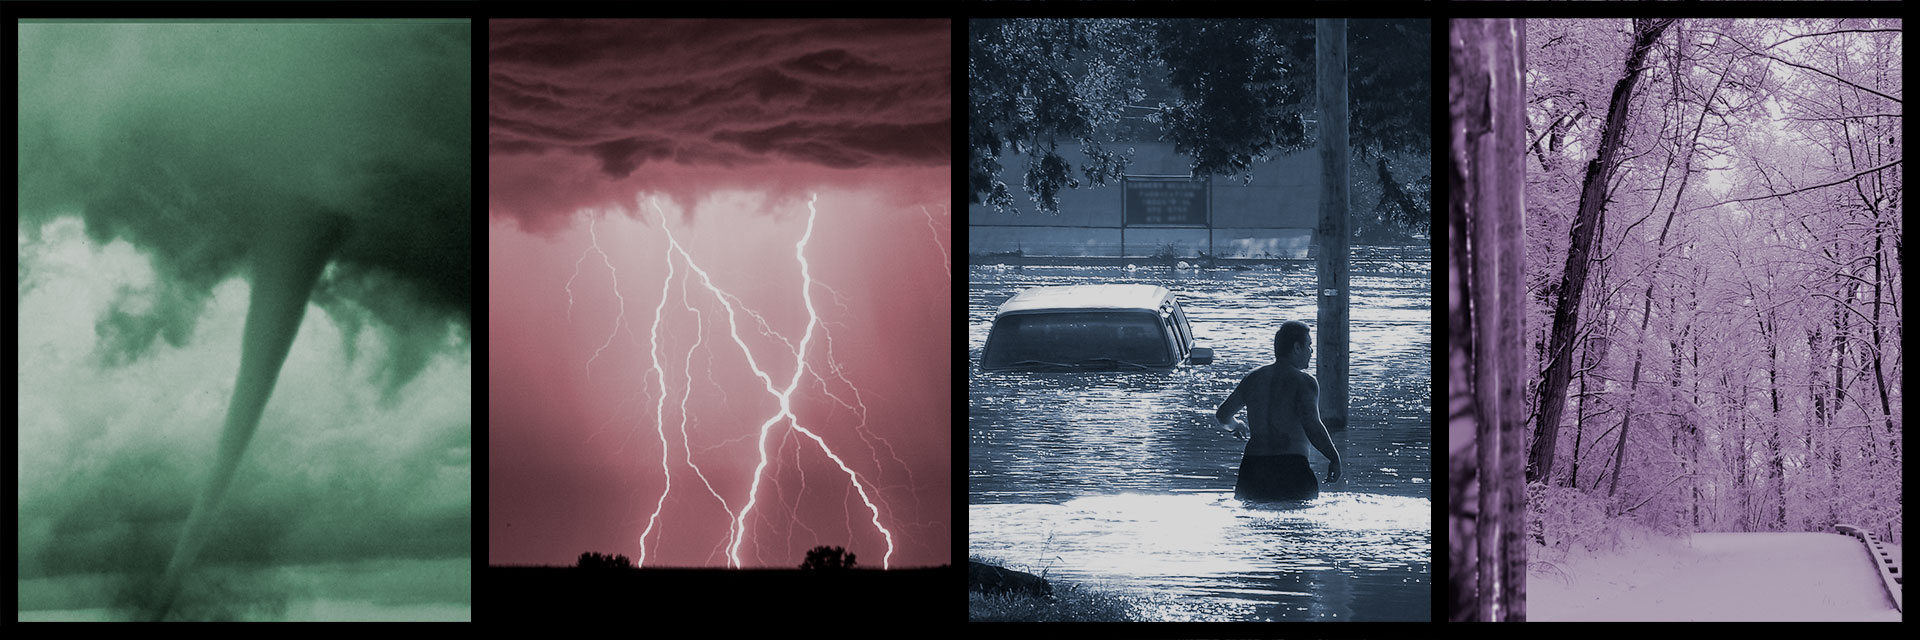 Images of tornado, lightning, flooding